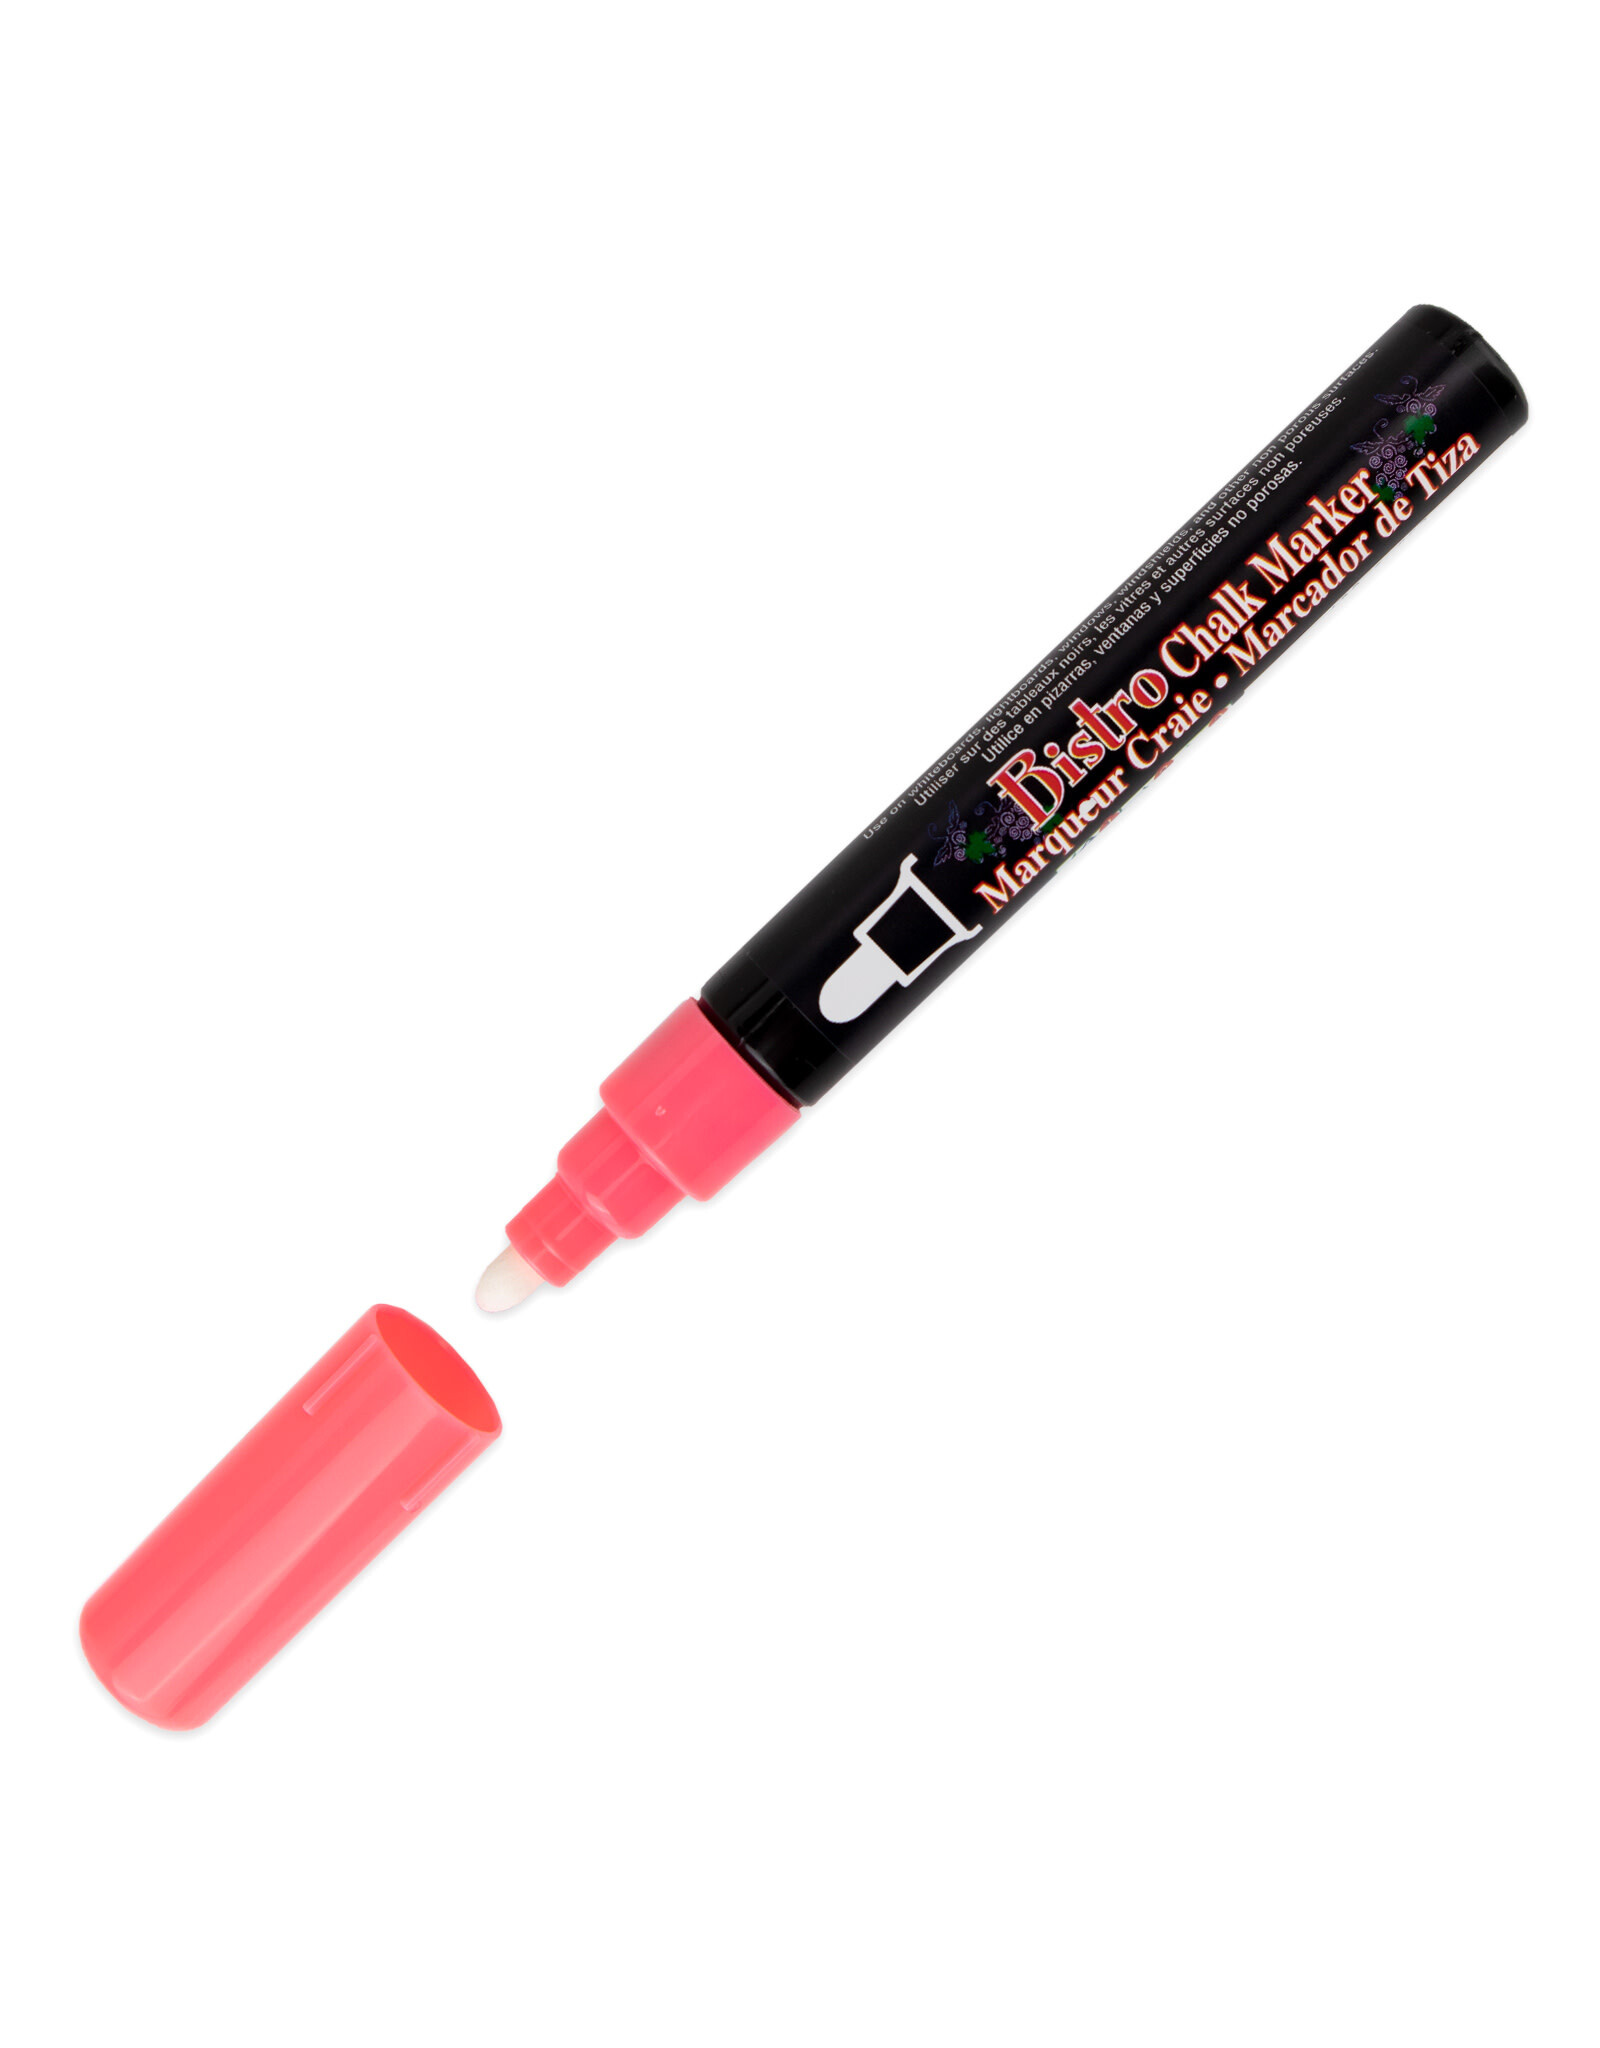 Uchida Uchida Bistro Chalk Marker, Fluorescent Red, 6mm